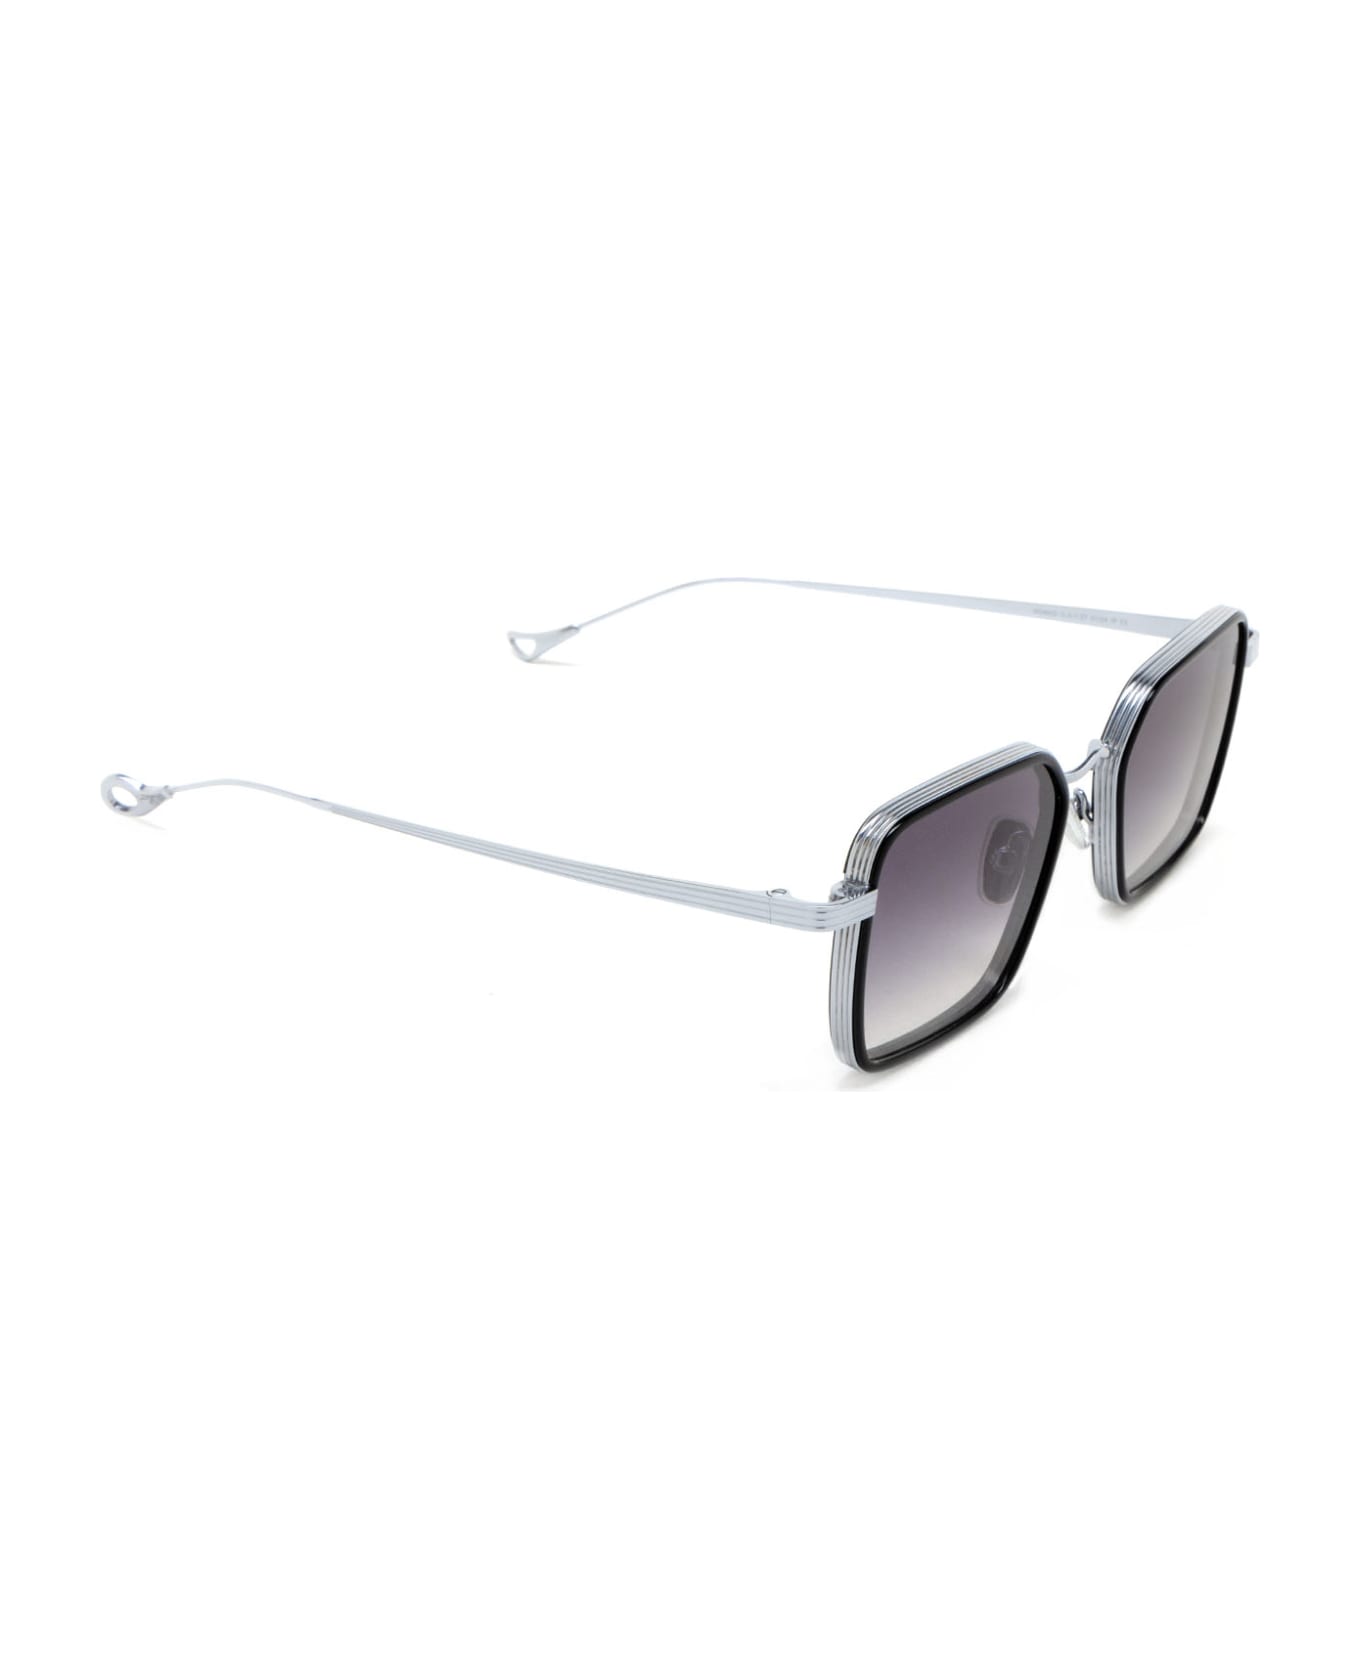 Eyepetizer Nomad Black Sunglasses - Black